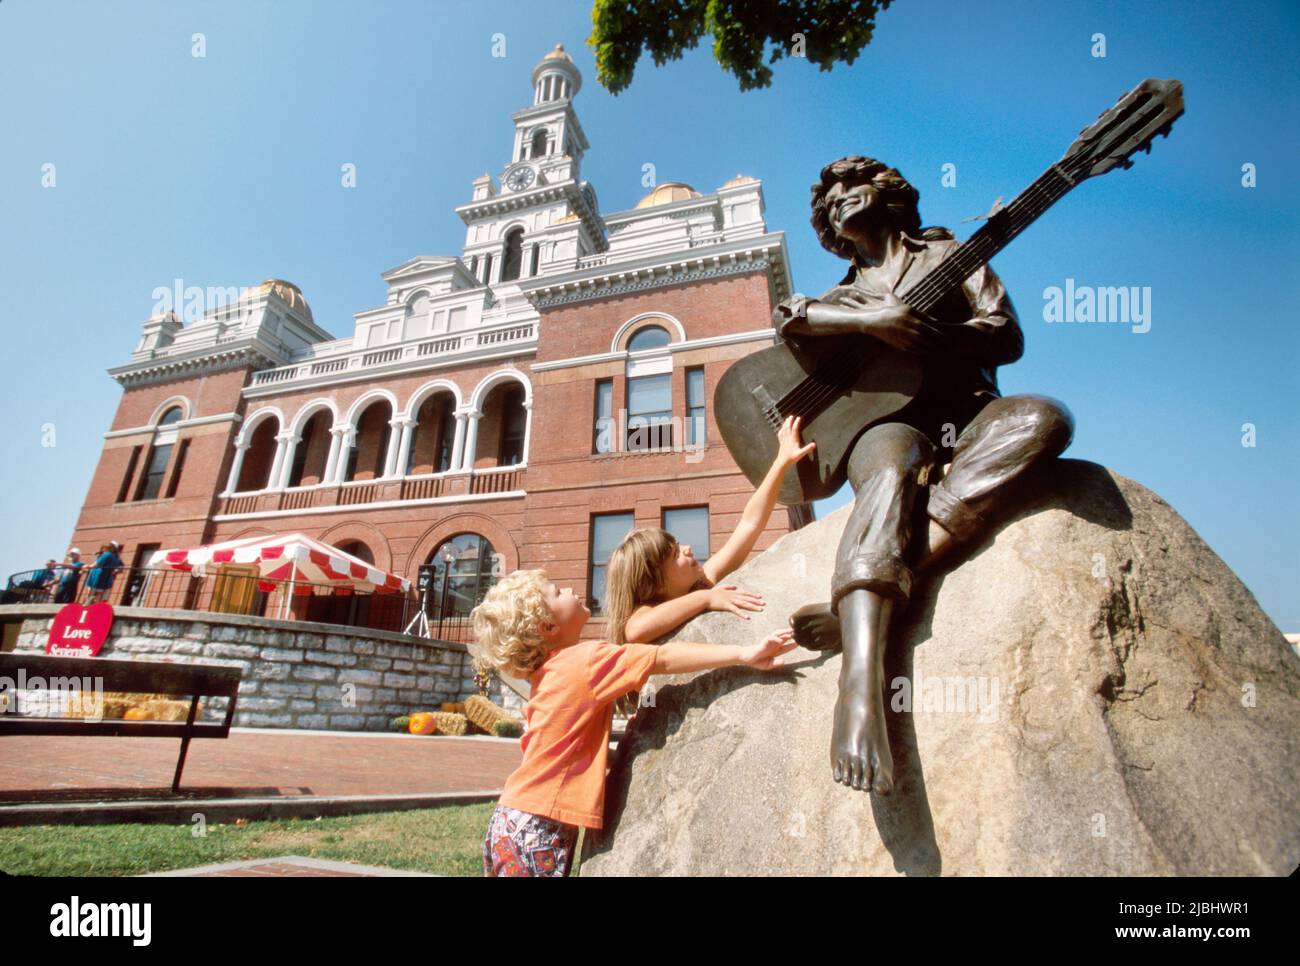 Sevierville Tennessee, monumento al arte público de la estatua de Dolly Parton, cantante de música country de la ciudad natal Sevier County Courthouse 1895 Foto de stock